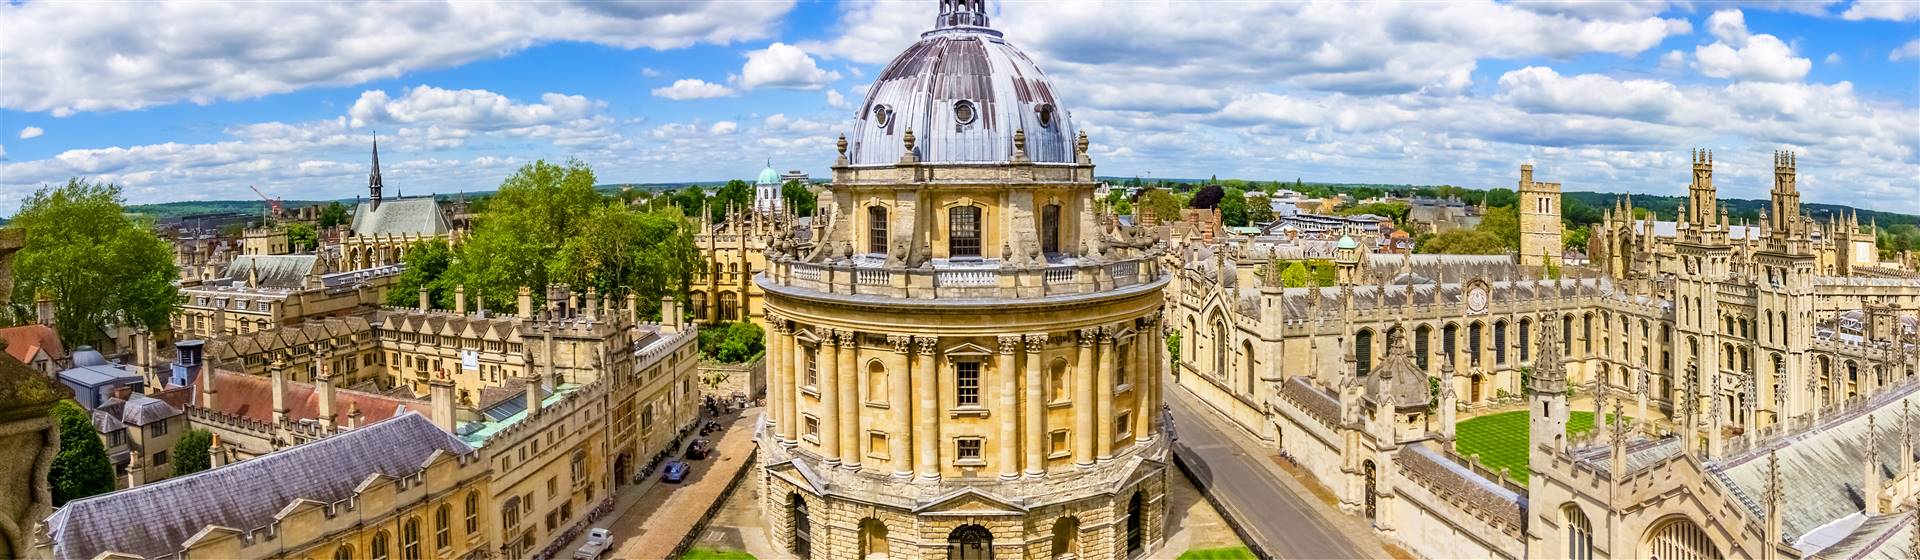 Oxford & Royal Windsor